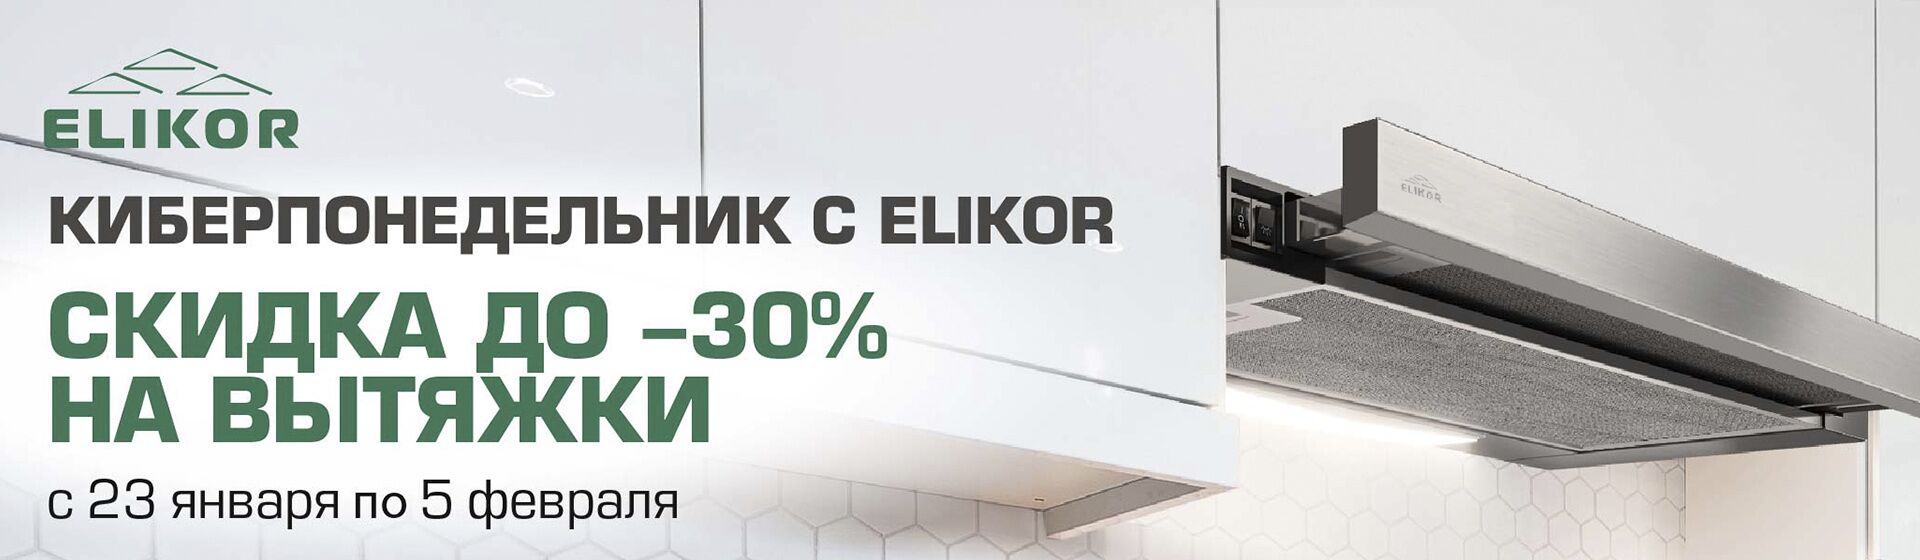 АКЦИЯ! -30% на вытяжки ELIKOR